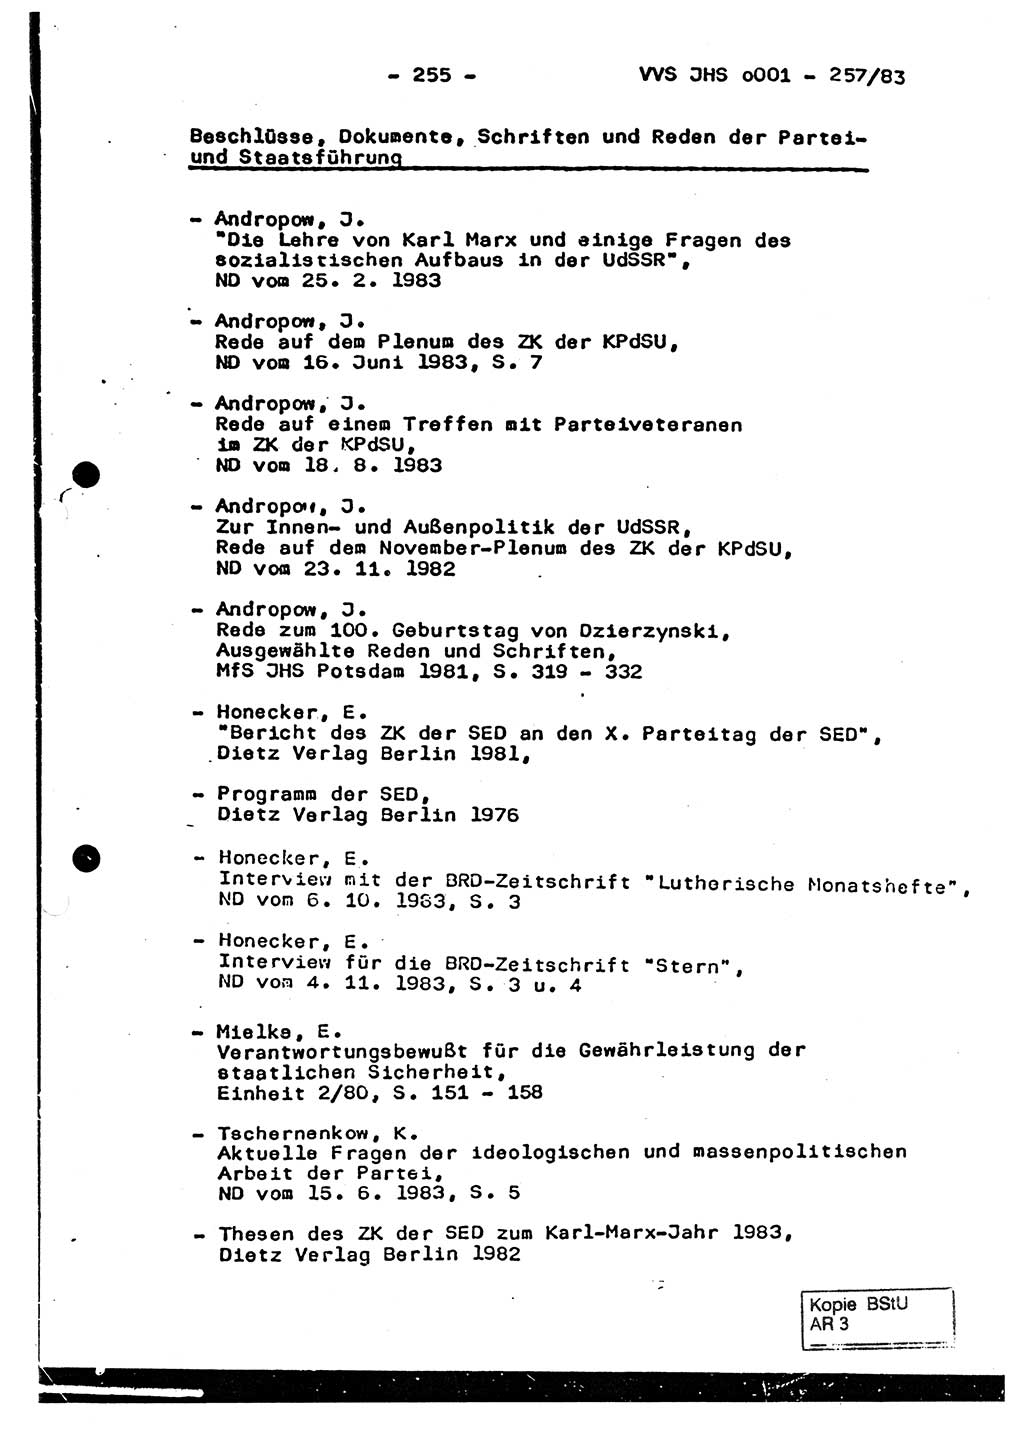 Dissertation, Oberst Helmut Lubas (BV Mdg.), Oberstleutnant Manfred Eschberger (HA IX), Oberleutnant Hans-Jürgen Ludwig (JHS), Ministerium für Staatssicherheit (MfS) [Deutsche Demokratische Republik (DDR)], Juristische Hochschule (JHS), Vertrauliche Verschlußsache (VVS) o001-257/83, Potsdam 1983, Seite 255 (Diss. MfS DDR JHS VVS o001-257/83 1983, S. 255)